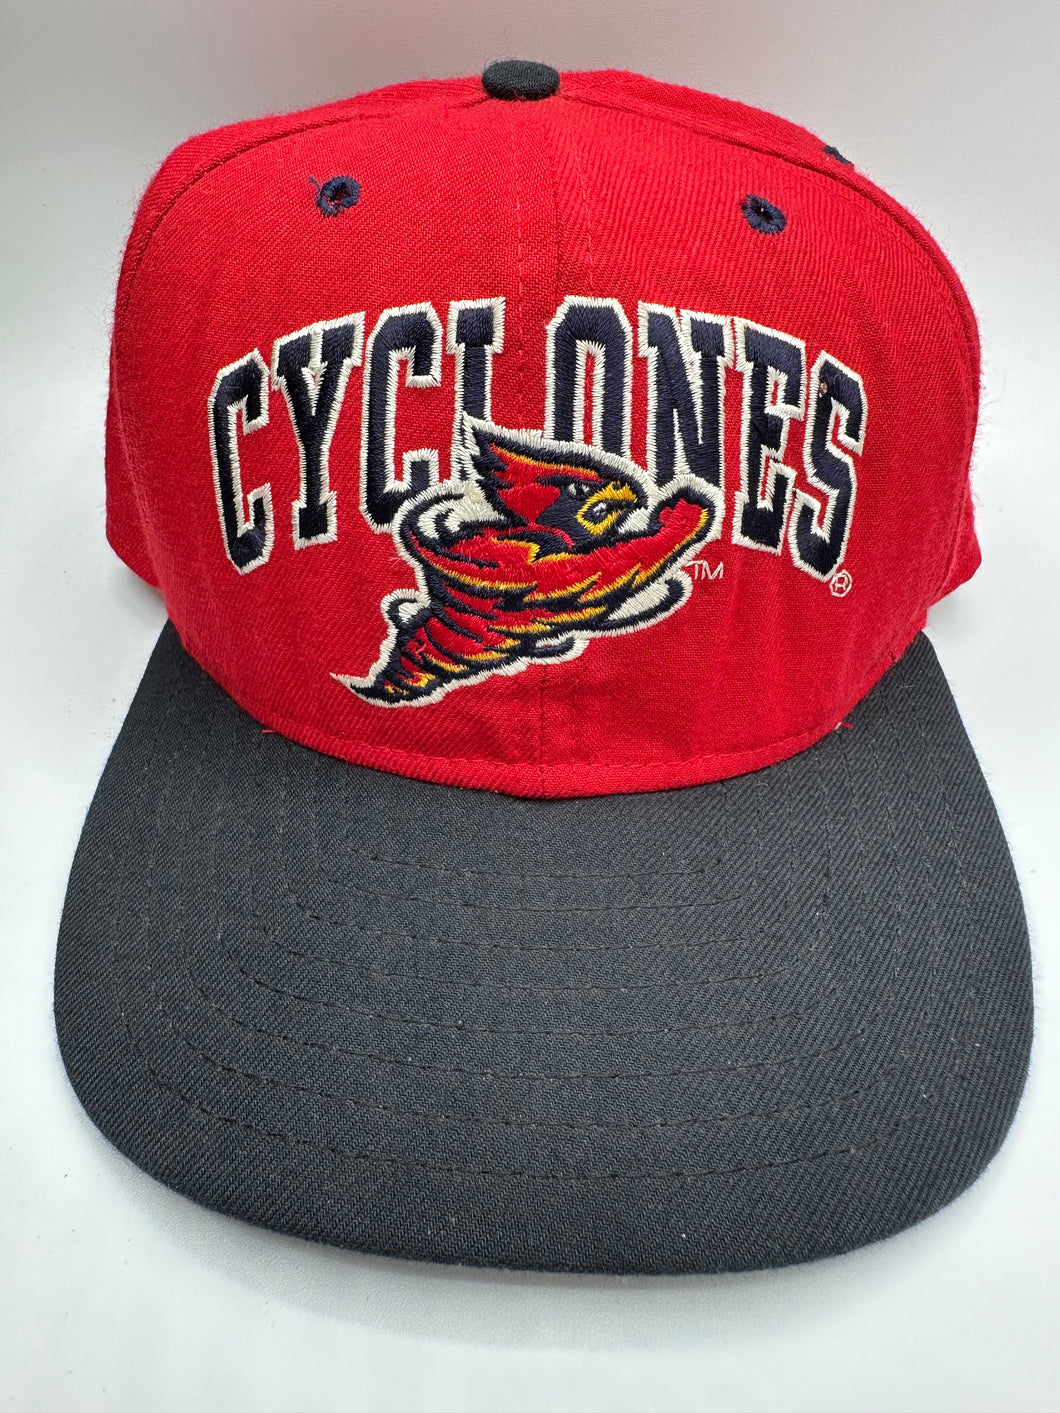 Vintage ISU Cyclones SnapBack Hat Nonbama